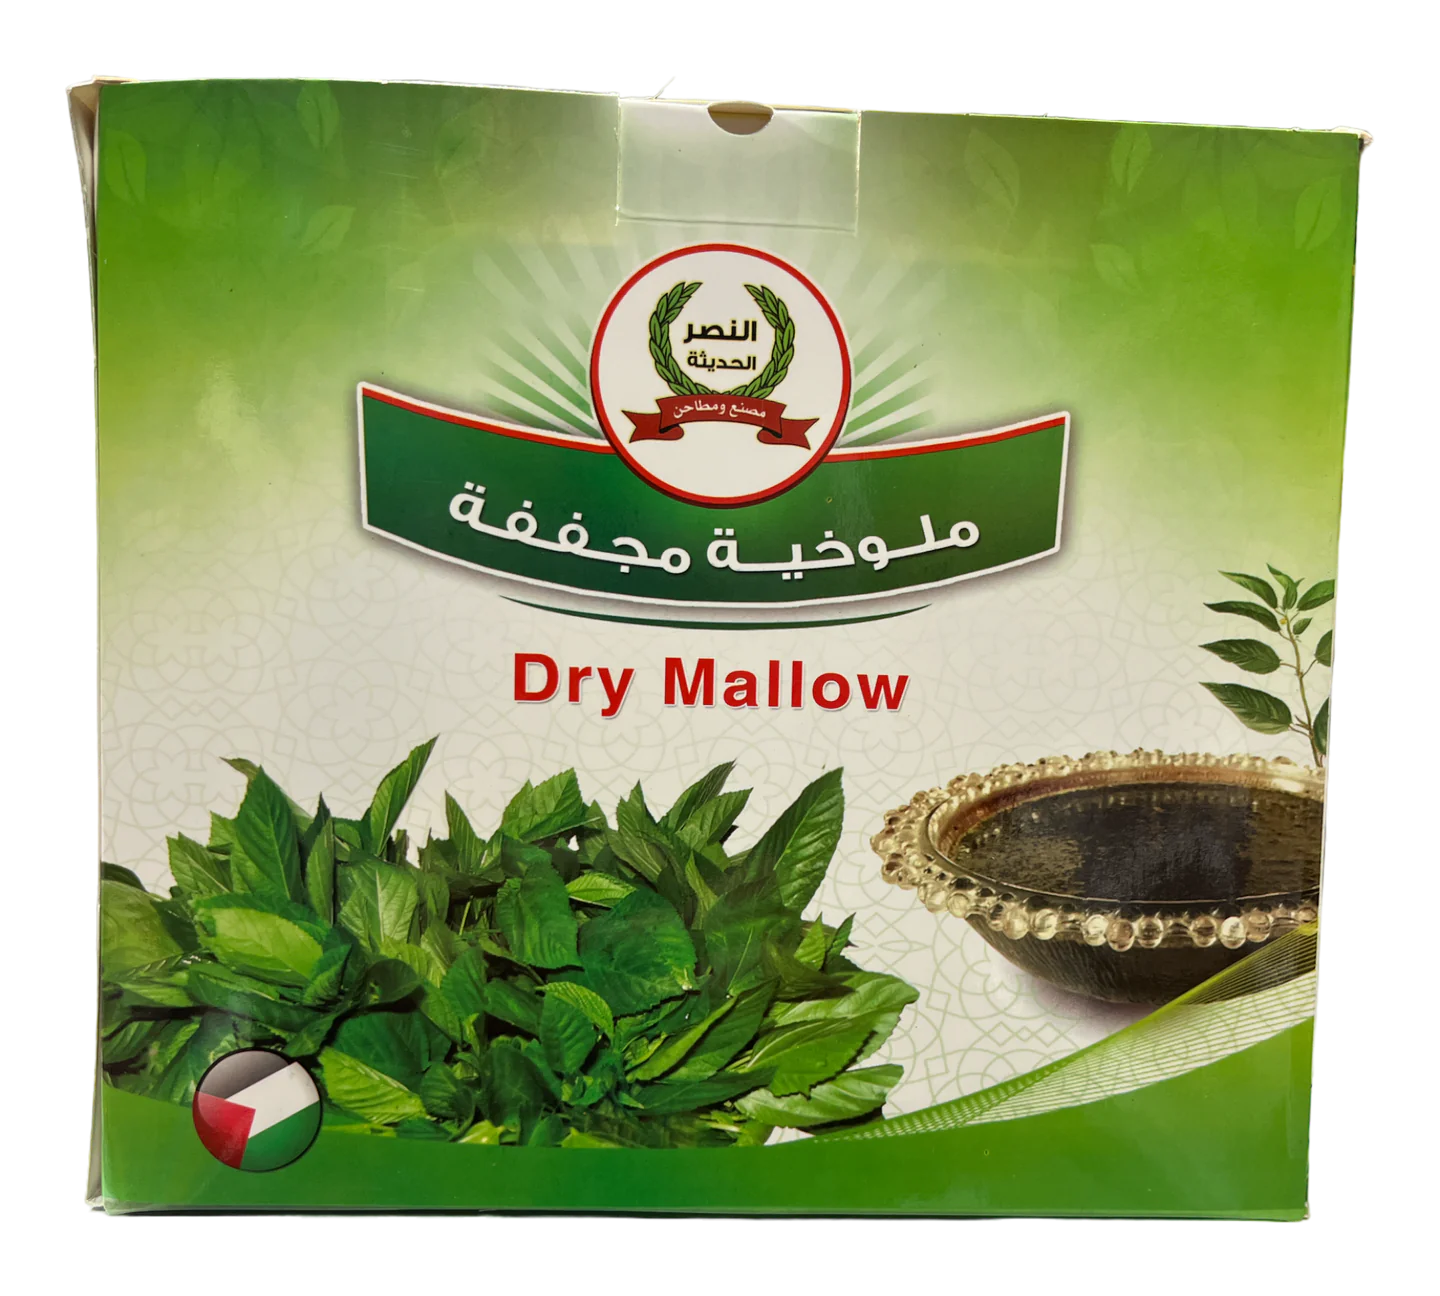 Dry Mallow/ملوخيه